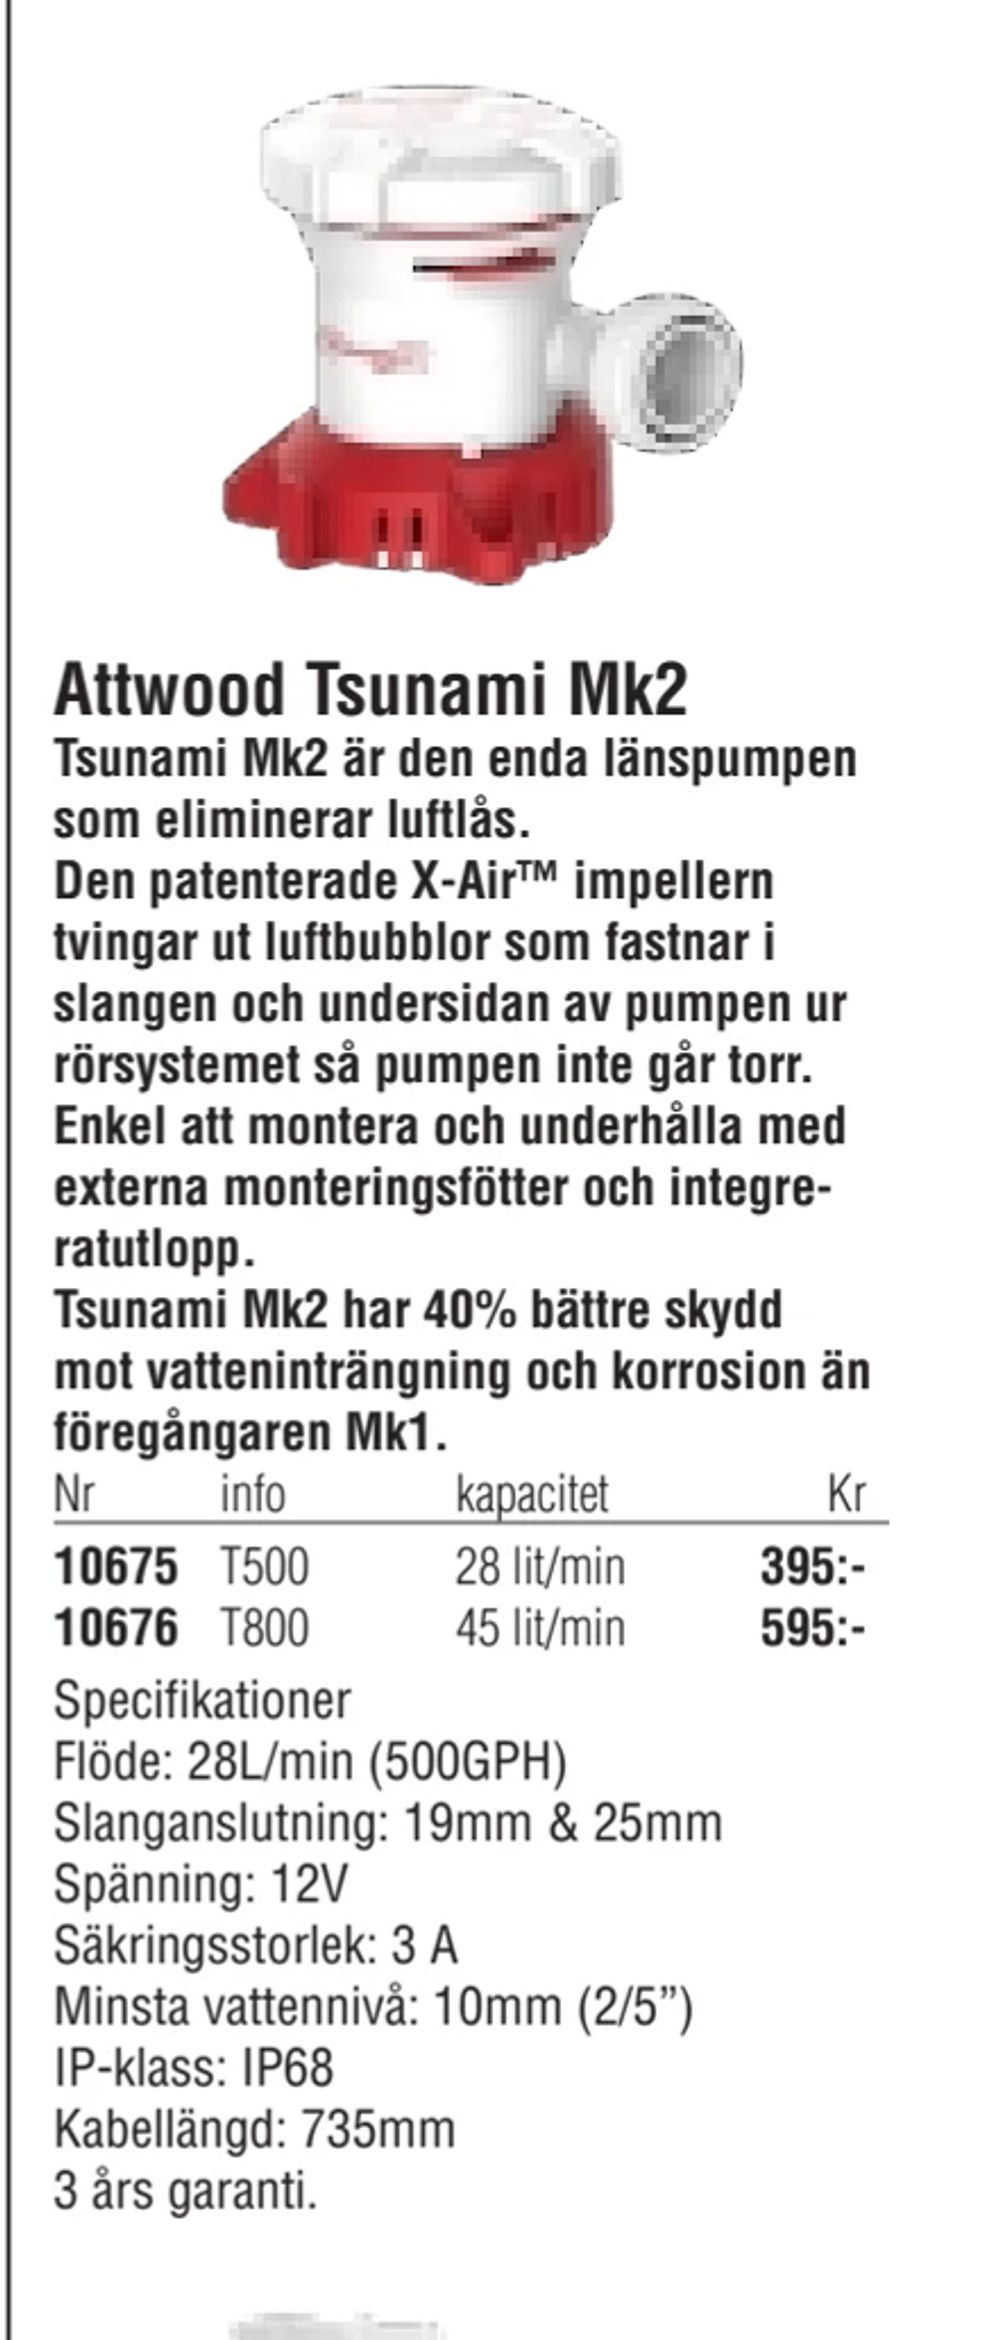 Erbjudanden på Attwood Tsunami Mk2 från Erlandsons Brygga för 395 kr